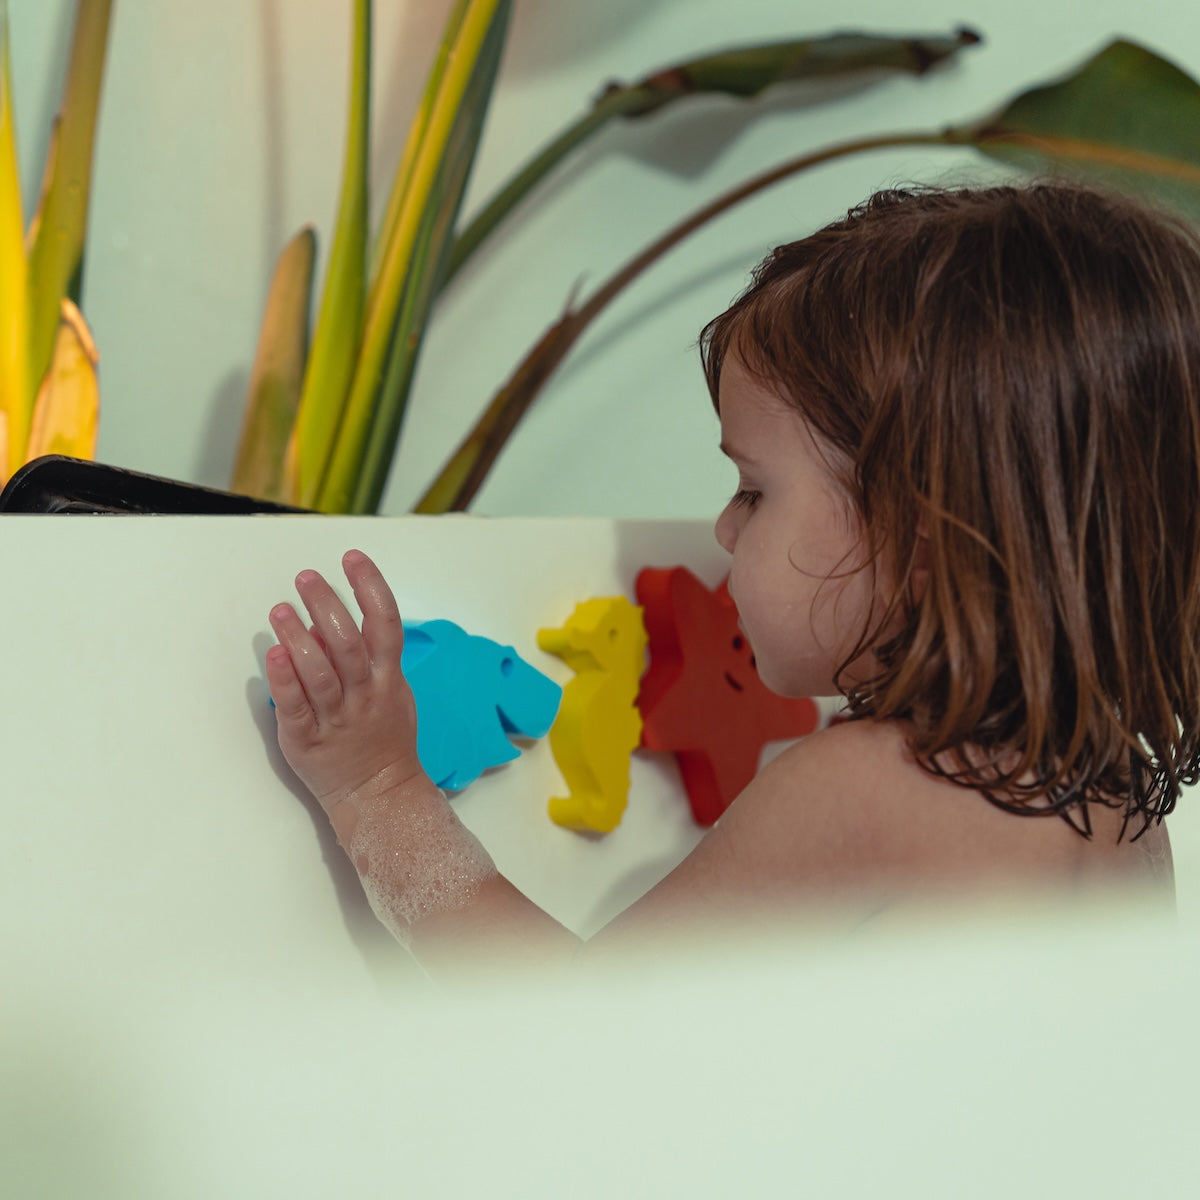 Met deze leuke Waterfun set van het merk Moes Play kan je kindje keer op keer fantastische wateravonturen beleven. De set bestaat uit 6 herkenbare dieren uit de onderwaterwereld en zijn geschikt voor in bad, onder de douche, in de zee en in het zwembad. VanZus